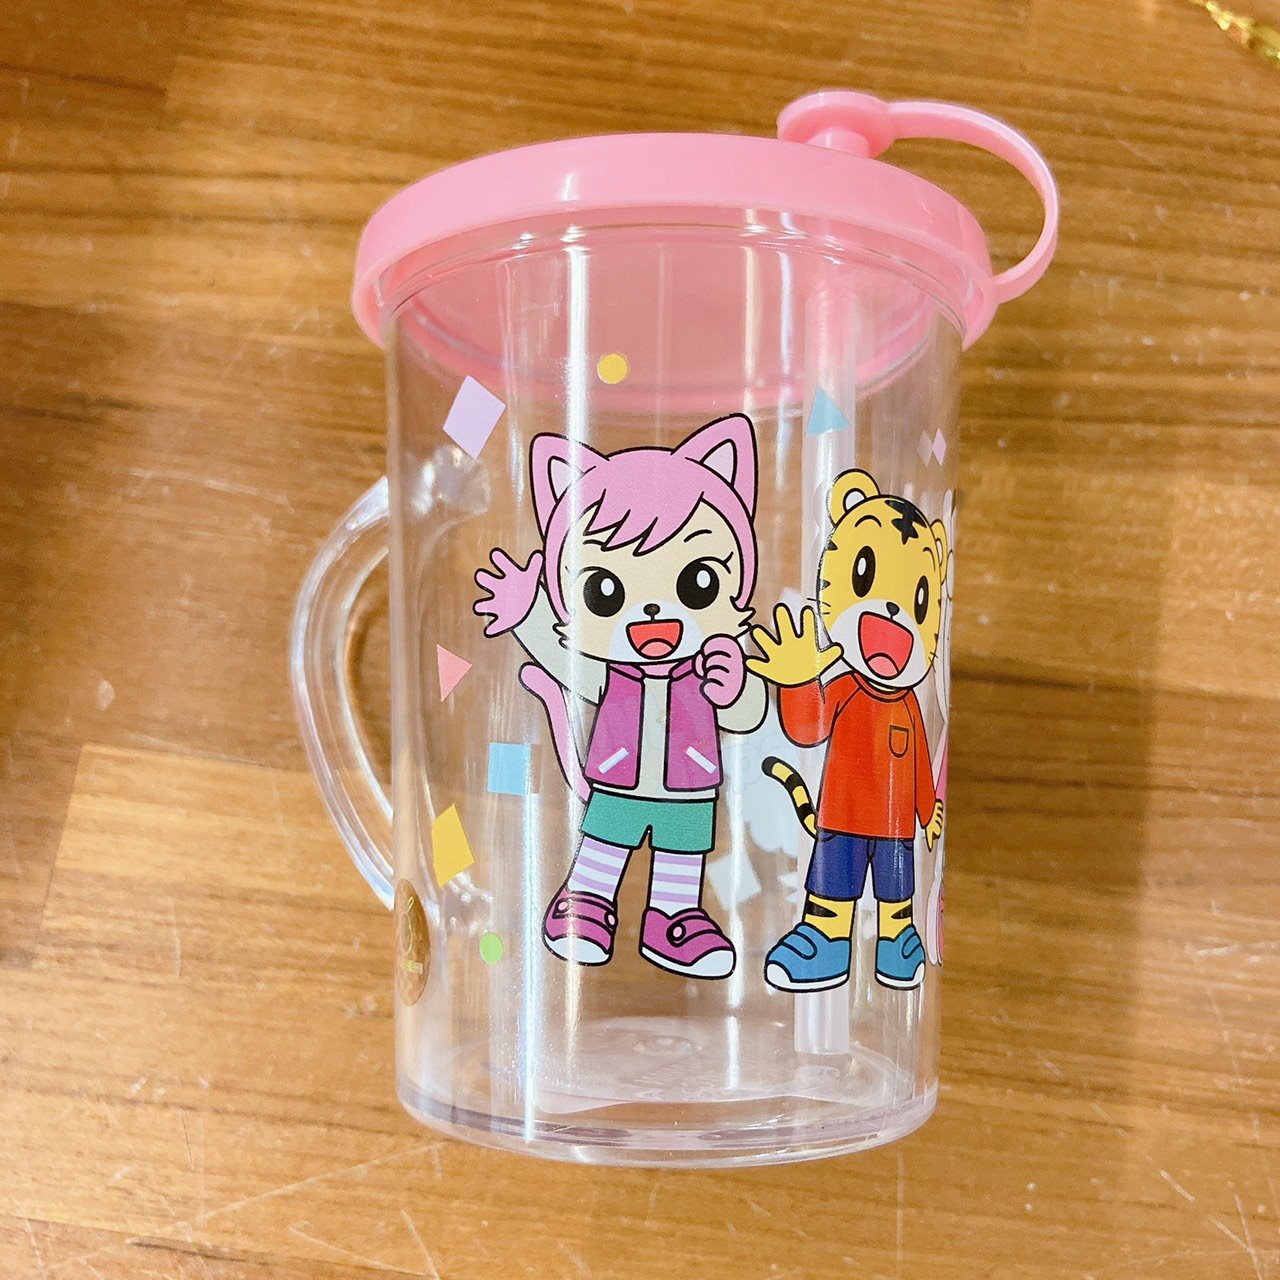 真愛日本 巧虎 粉 吸管杯 水杯 兒童水杯 學習杯 學習 兒童 幼兒 吸管 杯 水 壺 杯 台灣授權限定販售 21013000002